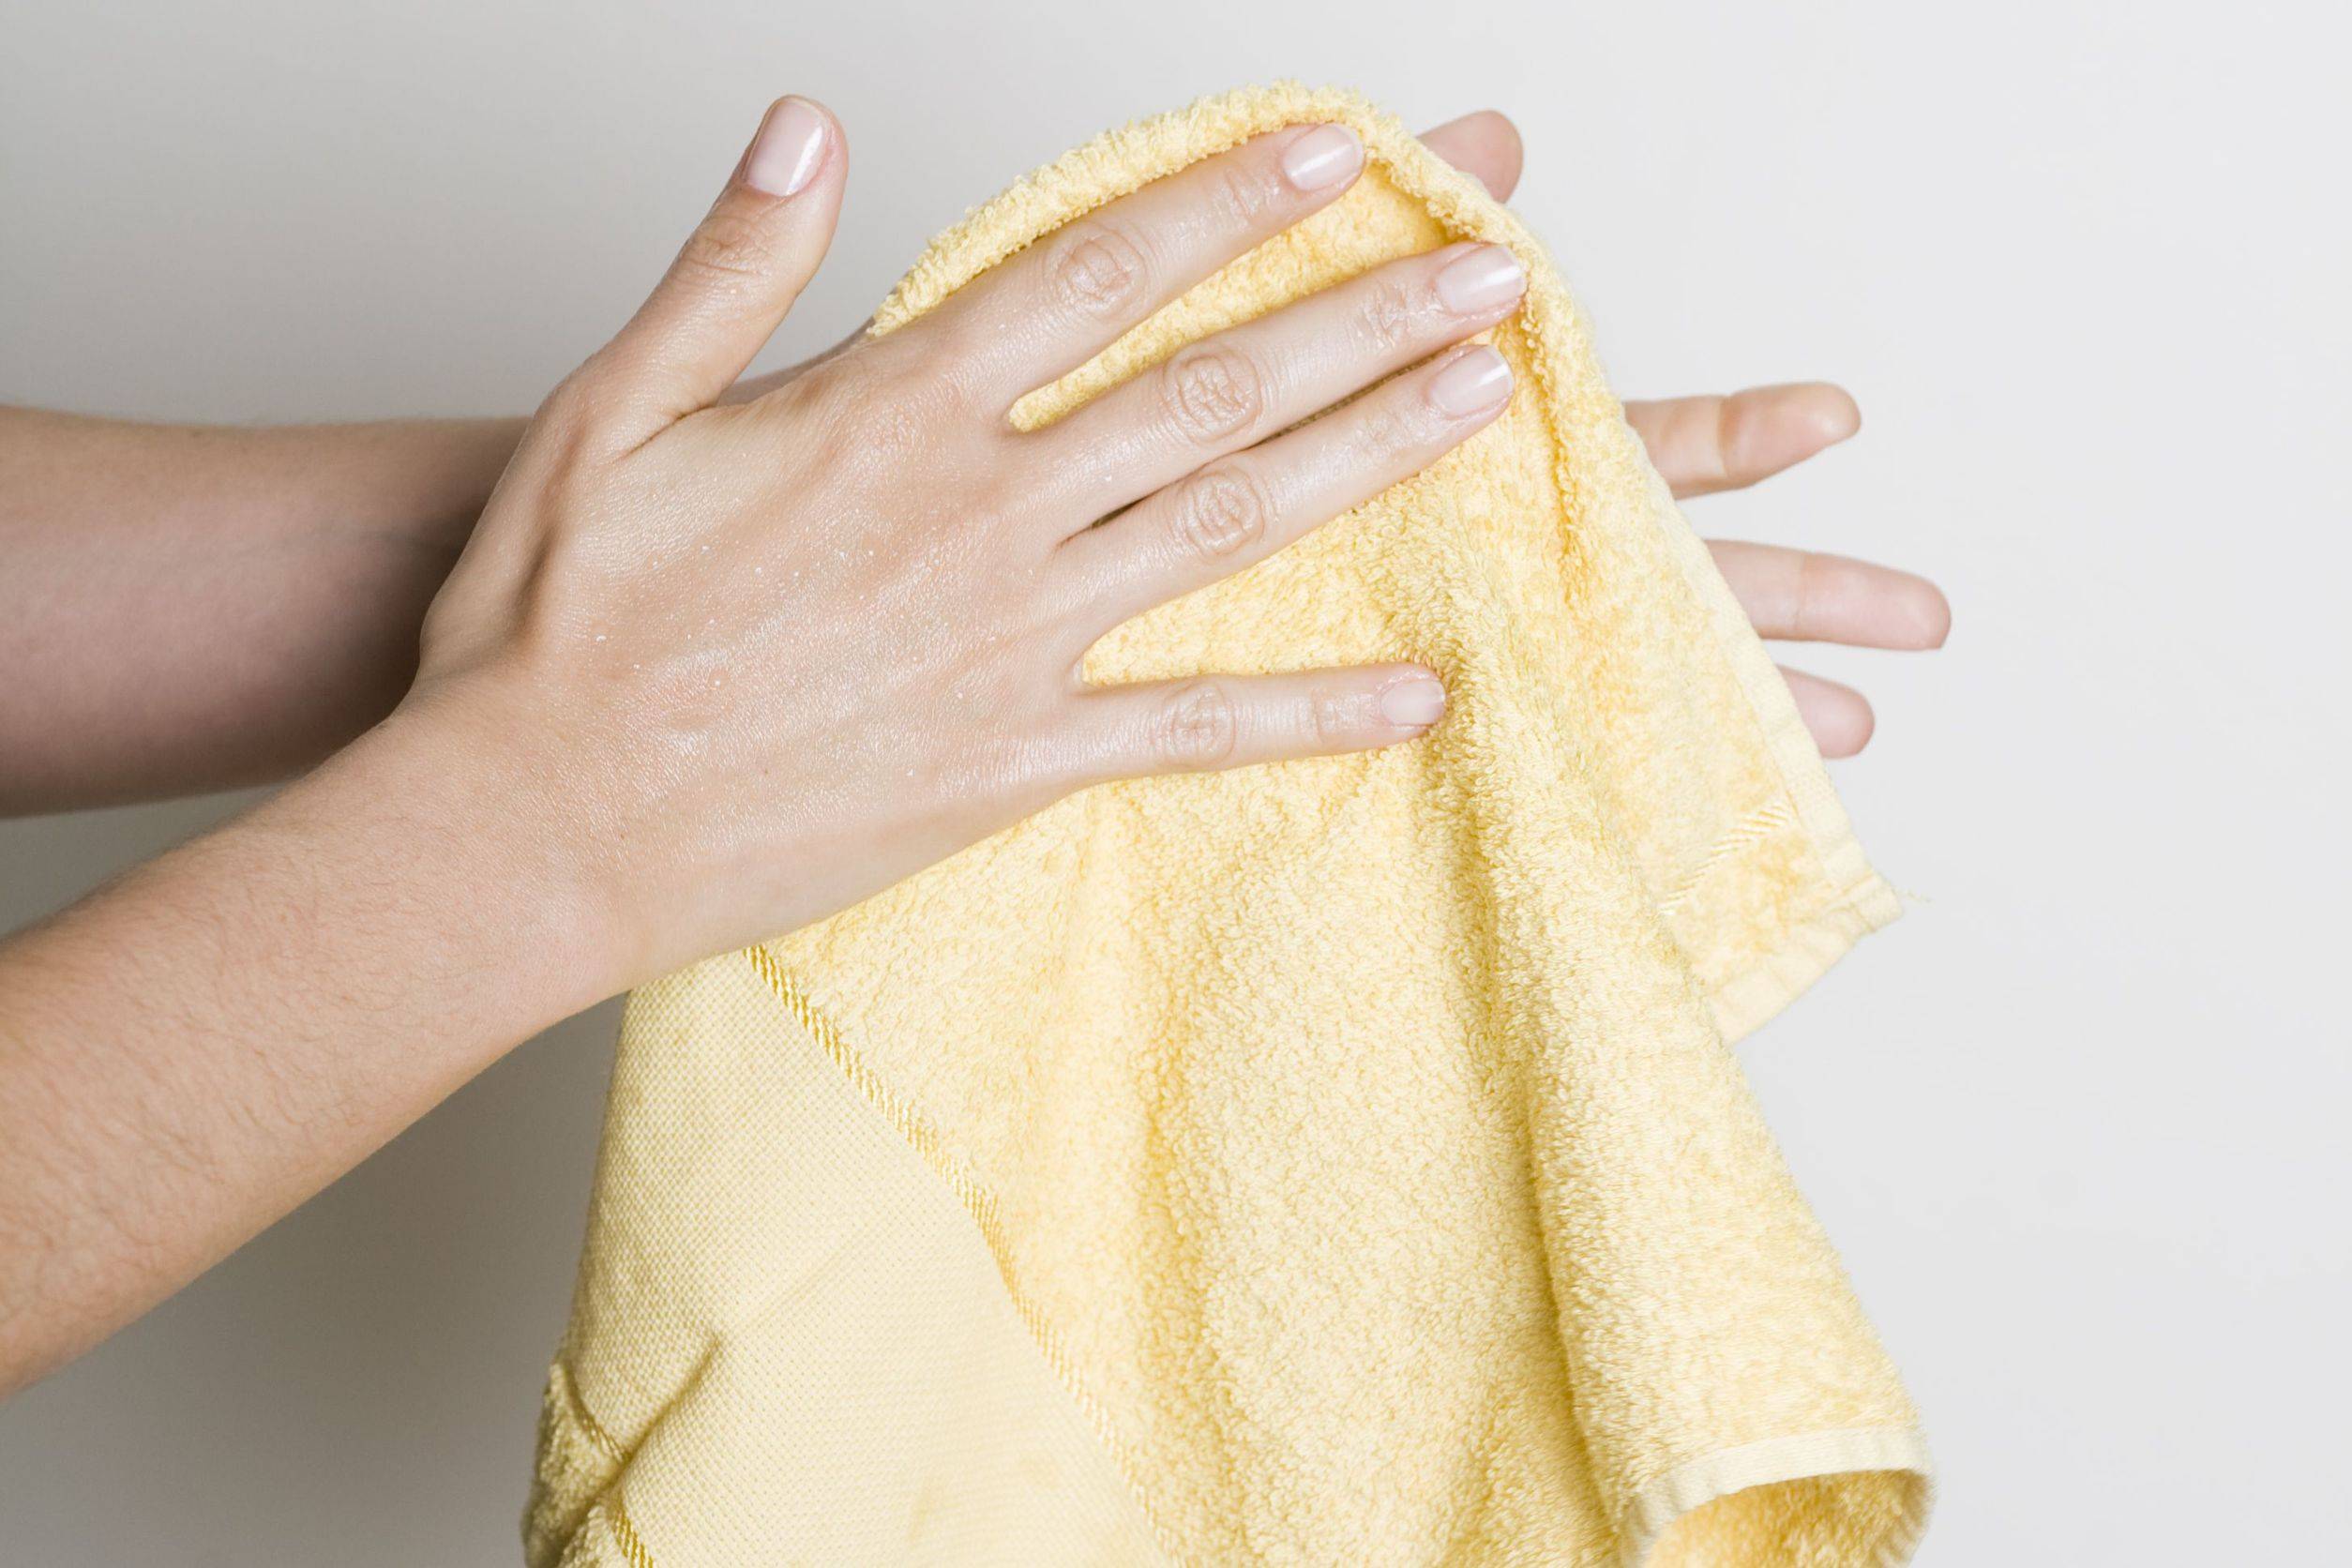 Била полотенцем. Полотенце для рук. Вытирает руки. Вытирание рук полотенцем. Рука с тряпкой.